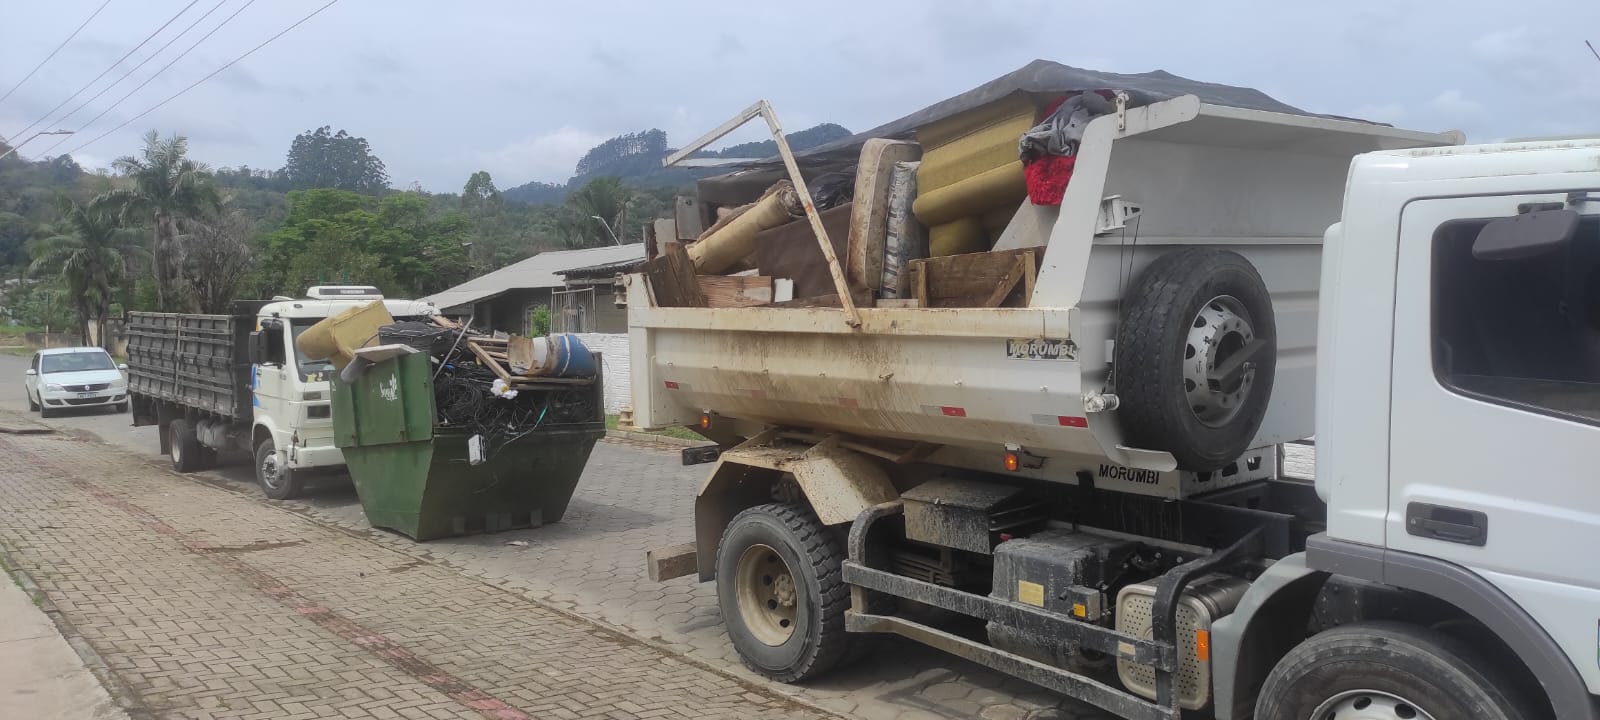 Voluntários recolhem 15 toneladas de lixo no bairro Taboão